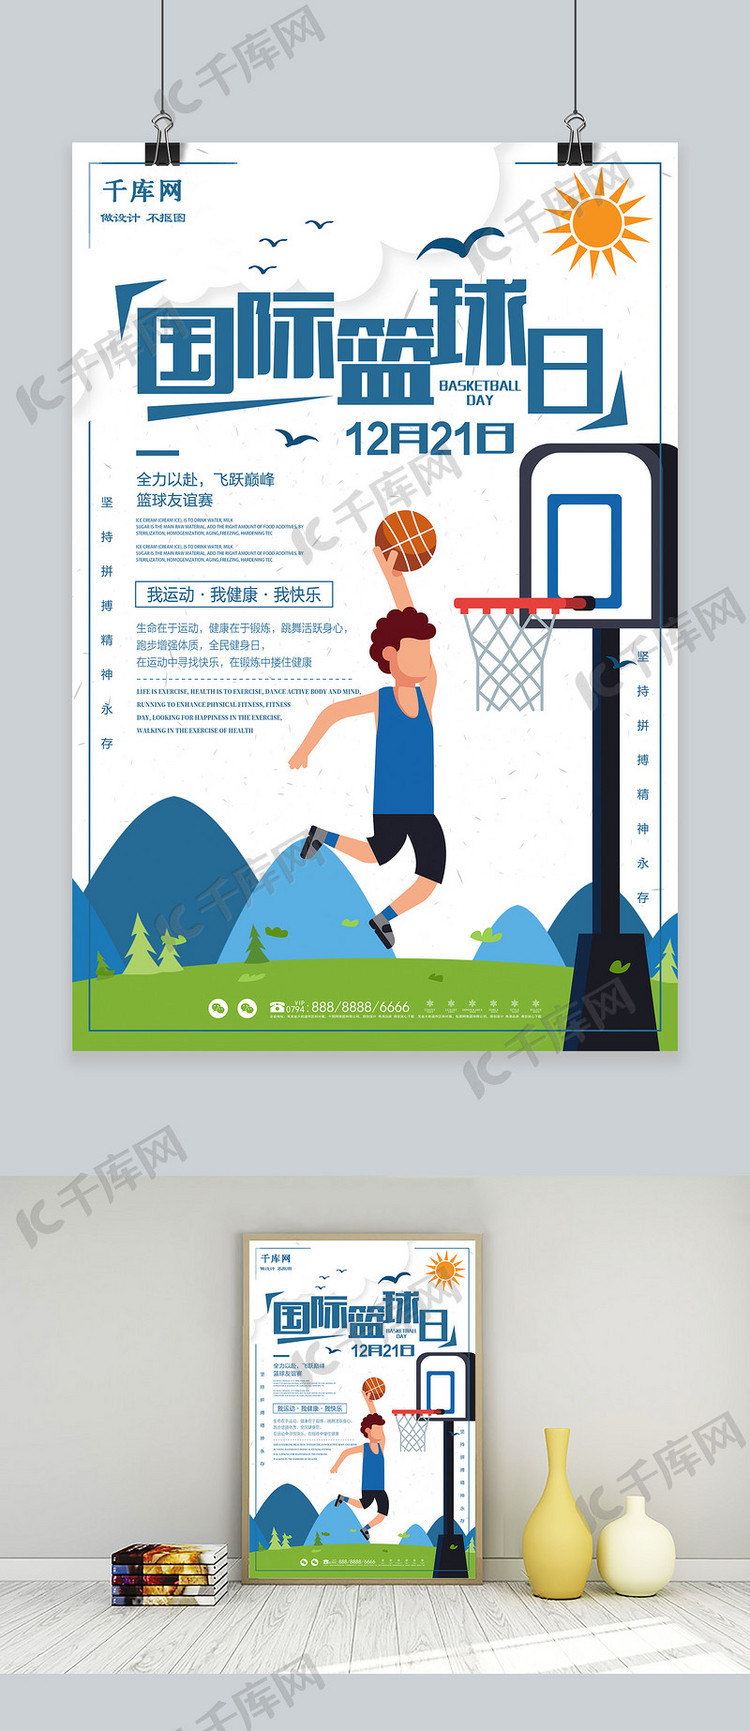 千库原创国际篮球日宣传海报